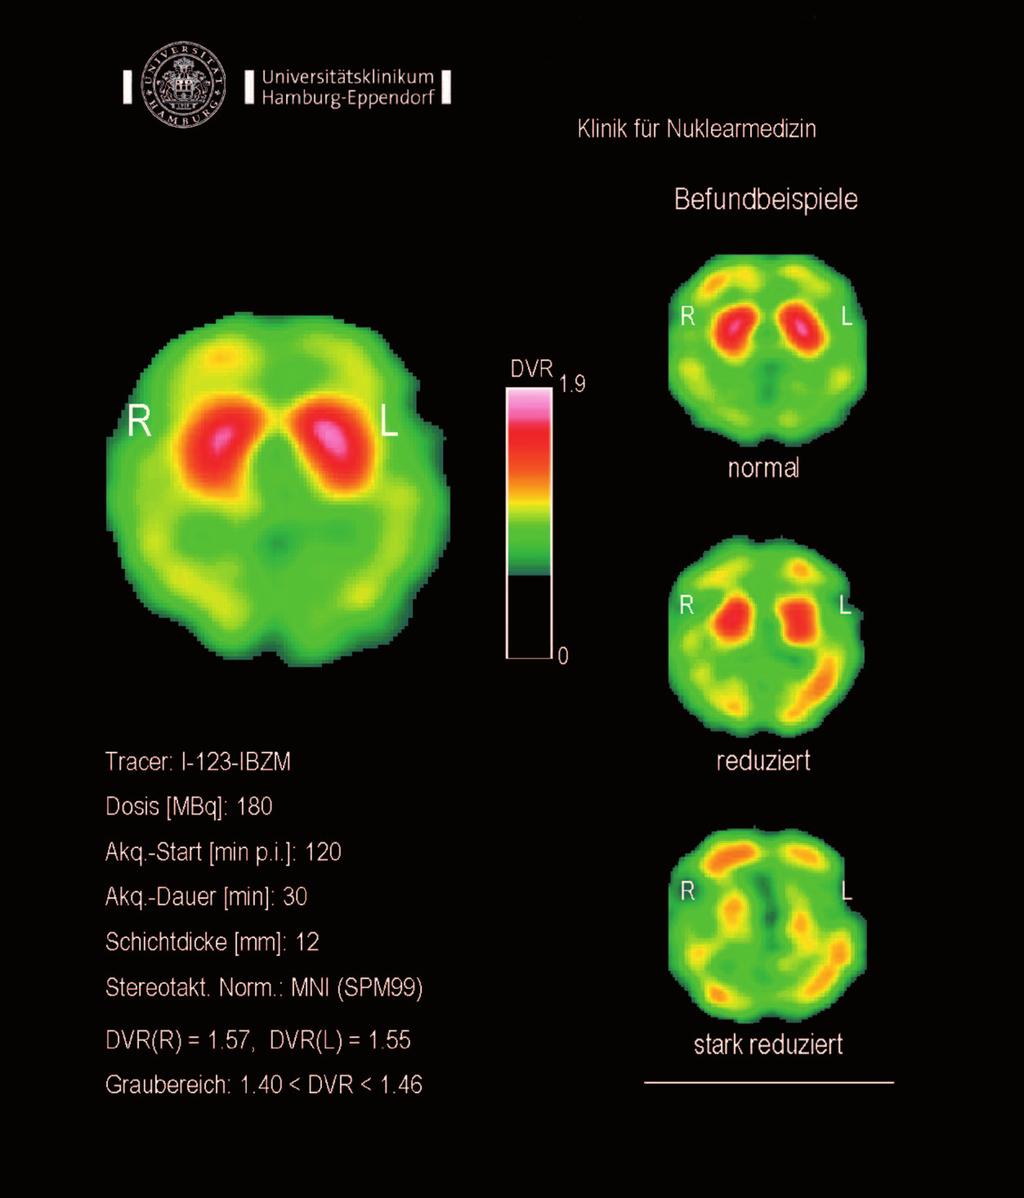 12 PARKINSON-SYNDROM 13 Differenzierung zwischen atypischen Parkinson Syndromen und Morbus Parkinson mit IBZM Was ist das Ziel der Untersuchung?